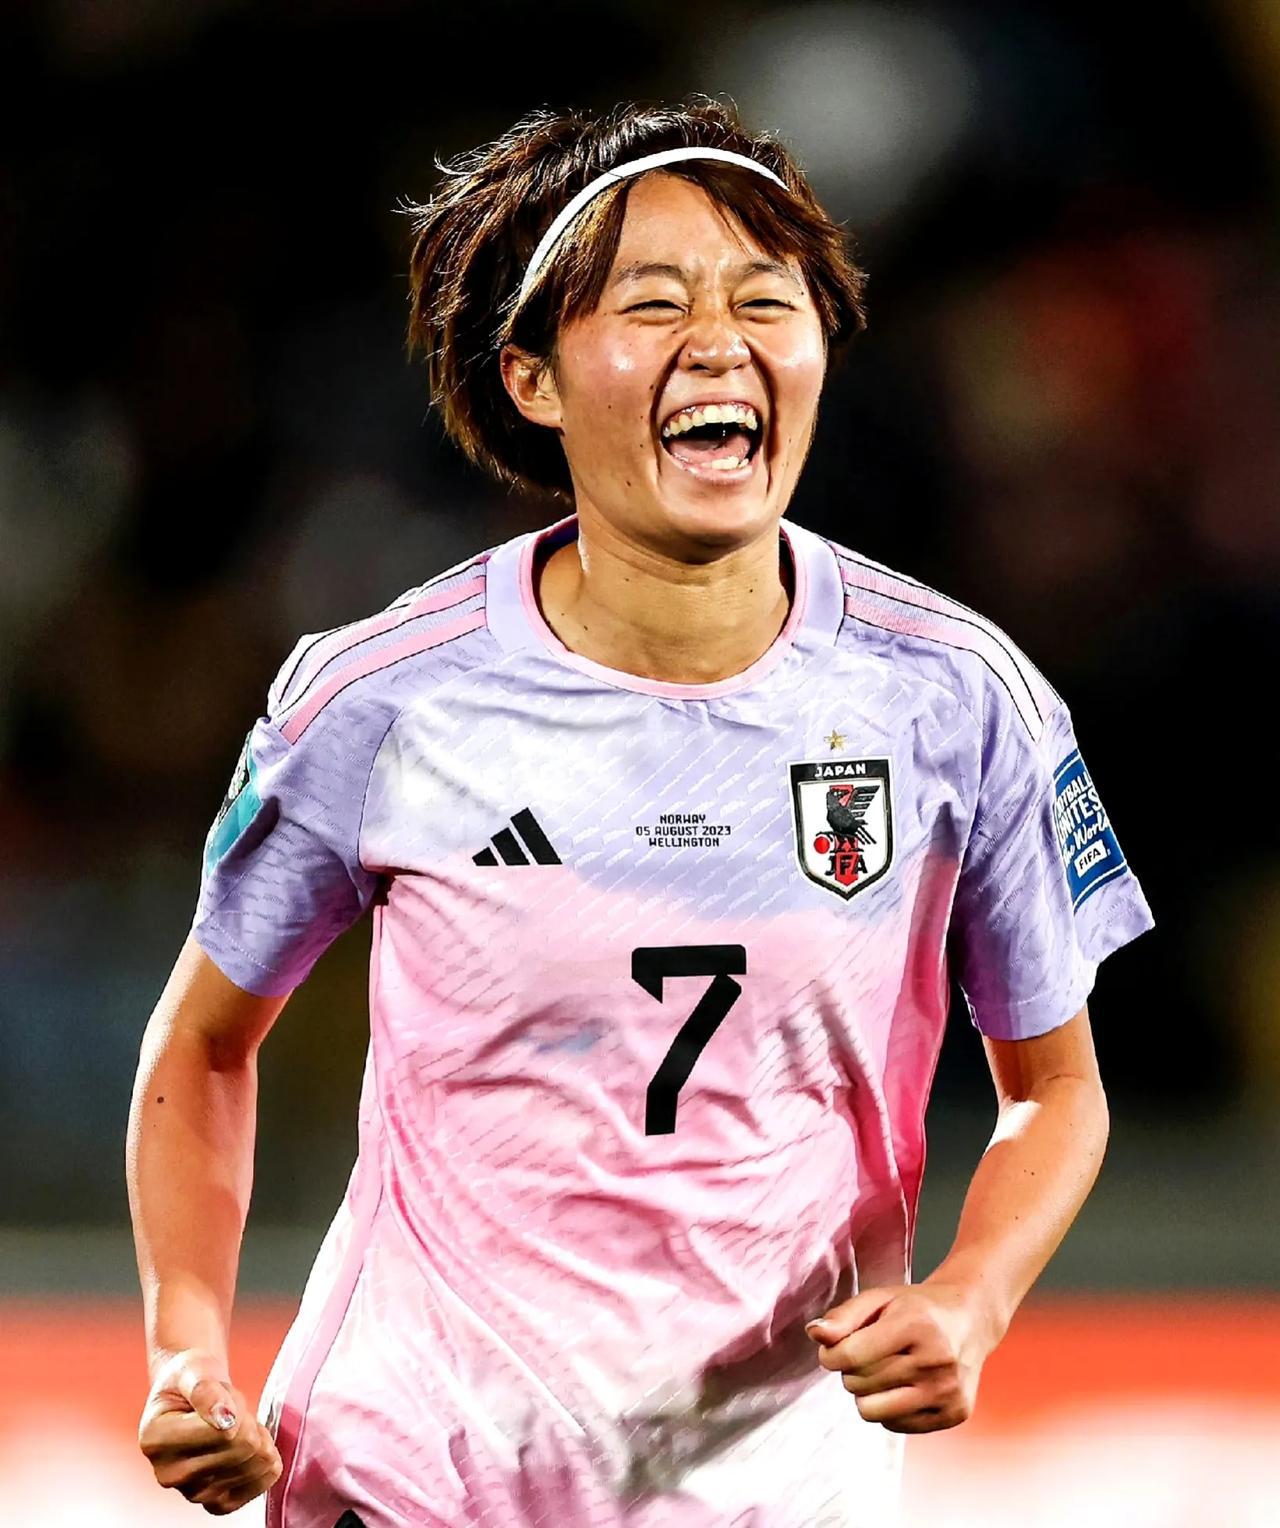 放低姿态，虚心学习，向日本足球取取经！

日本女足踢的真的太好了，无论是脚下技术(1)